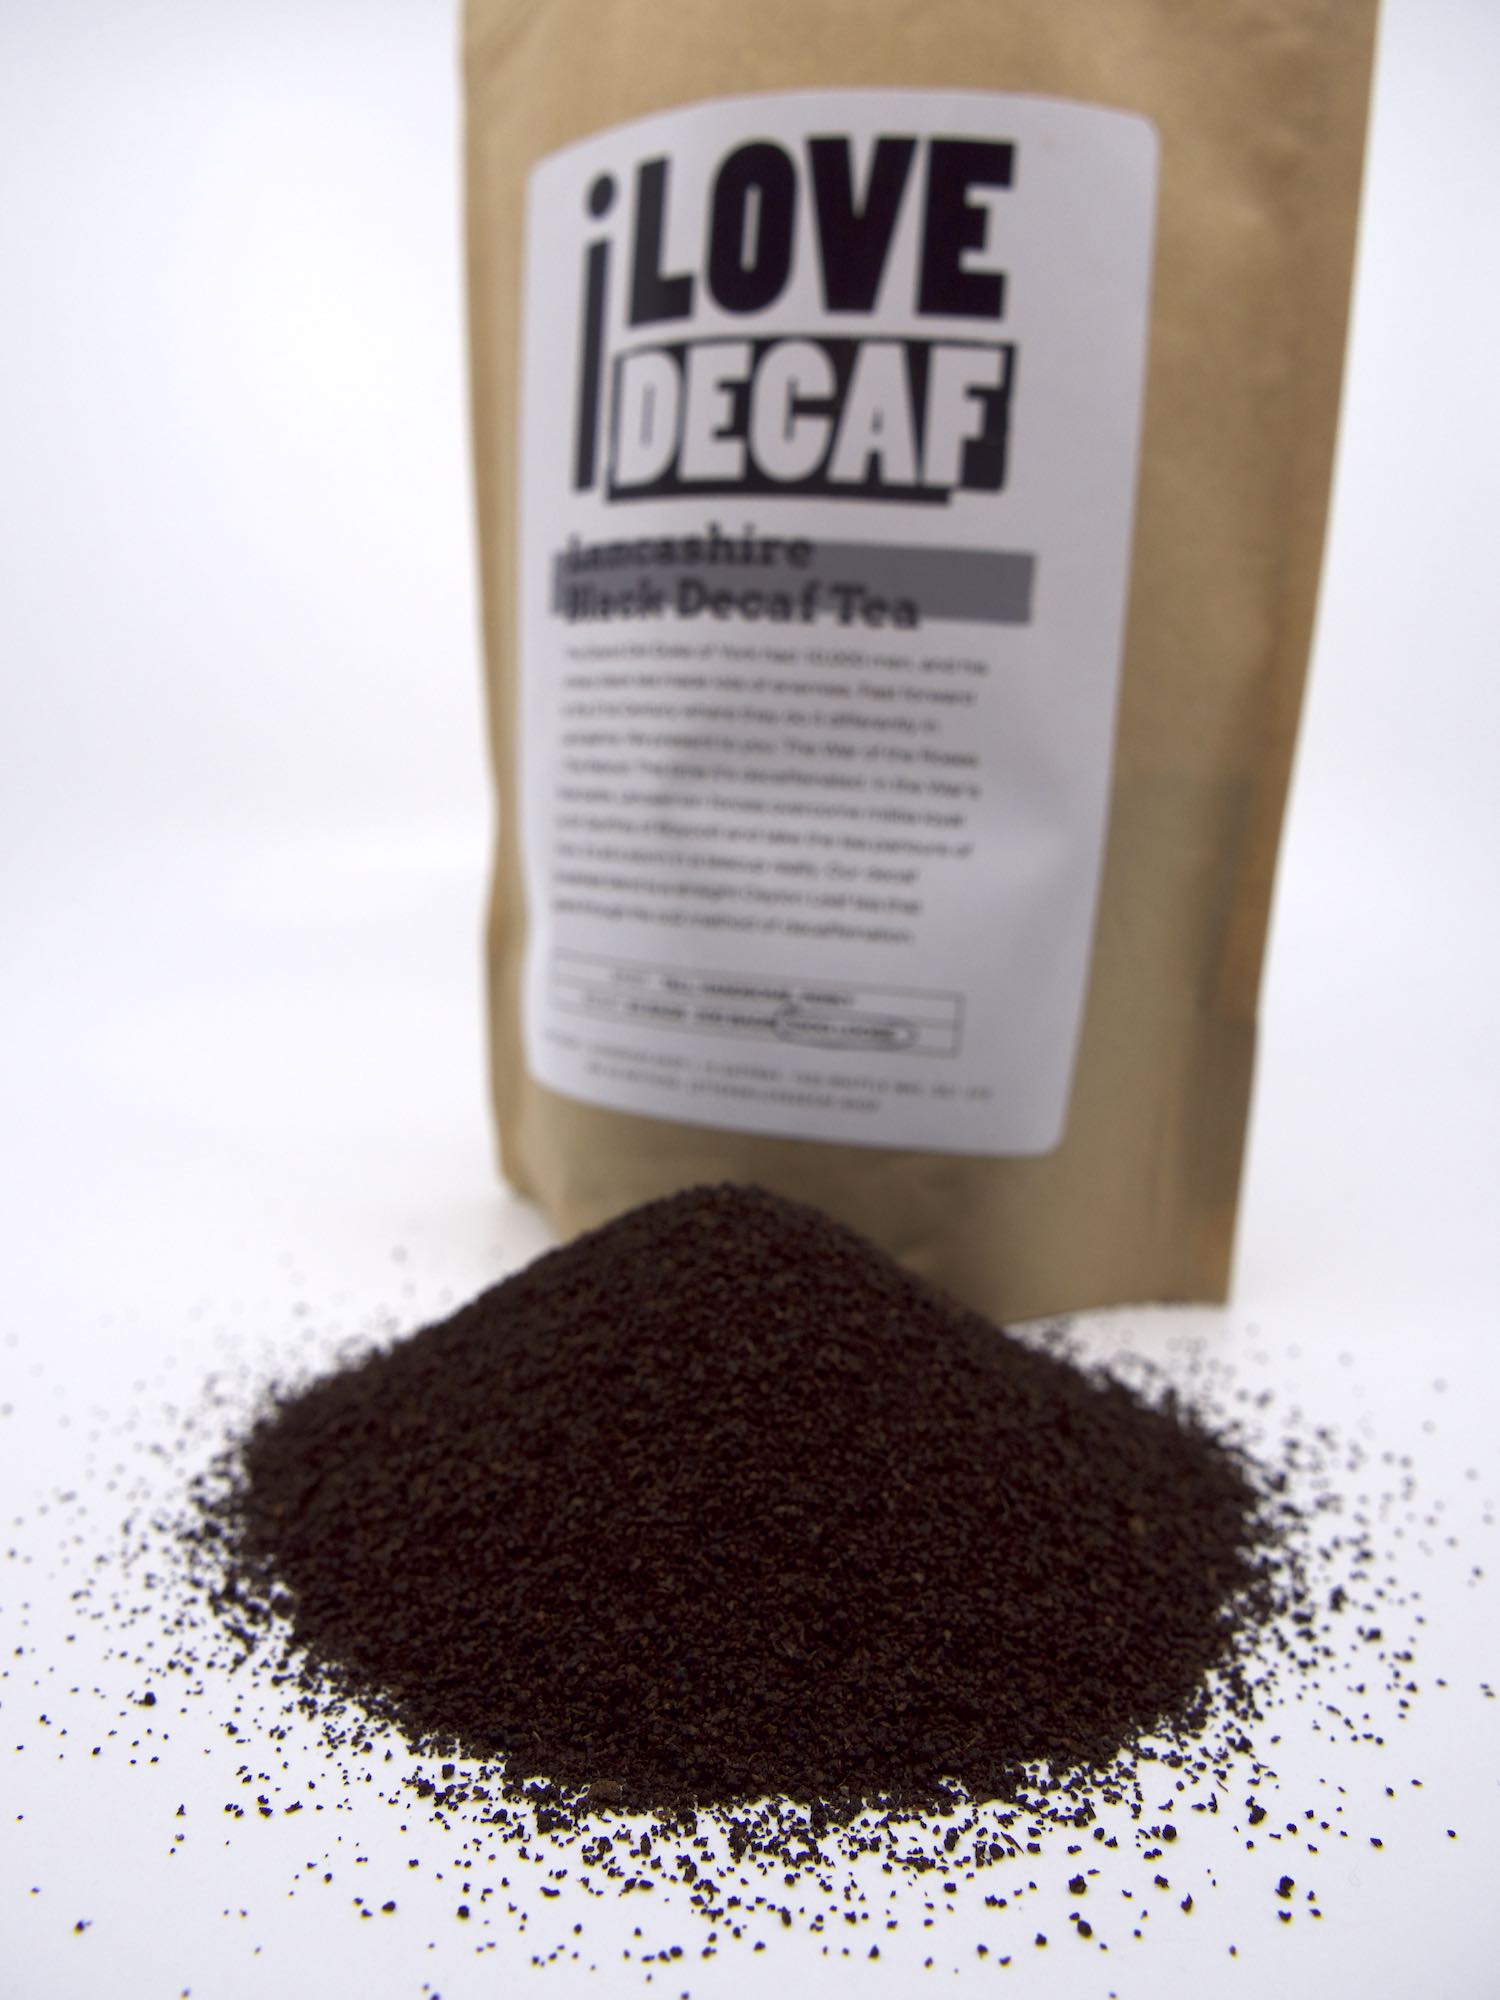 Lancashire black decaf loose leaf tea